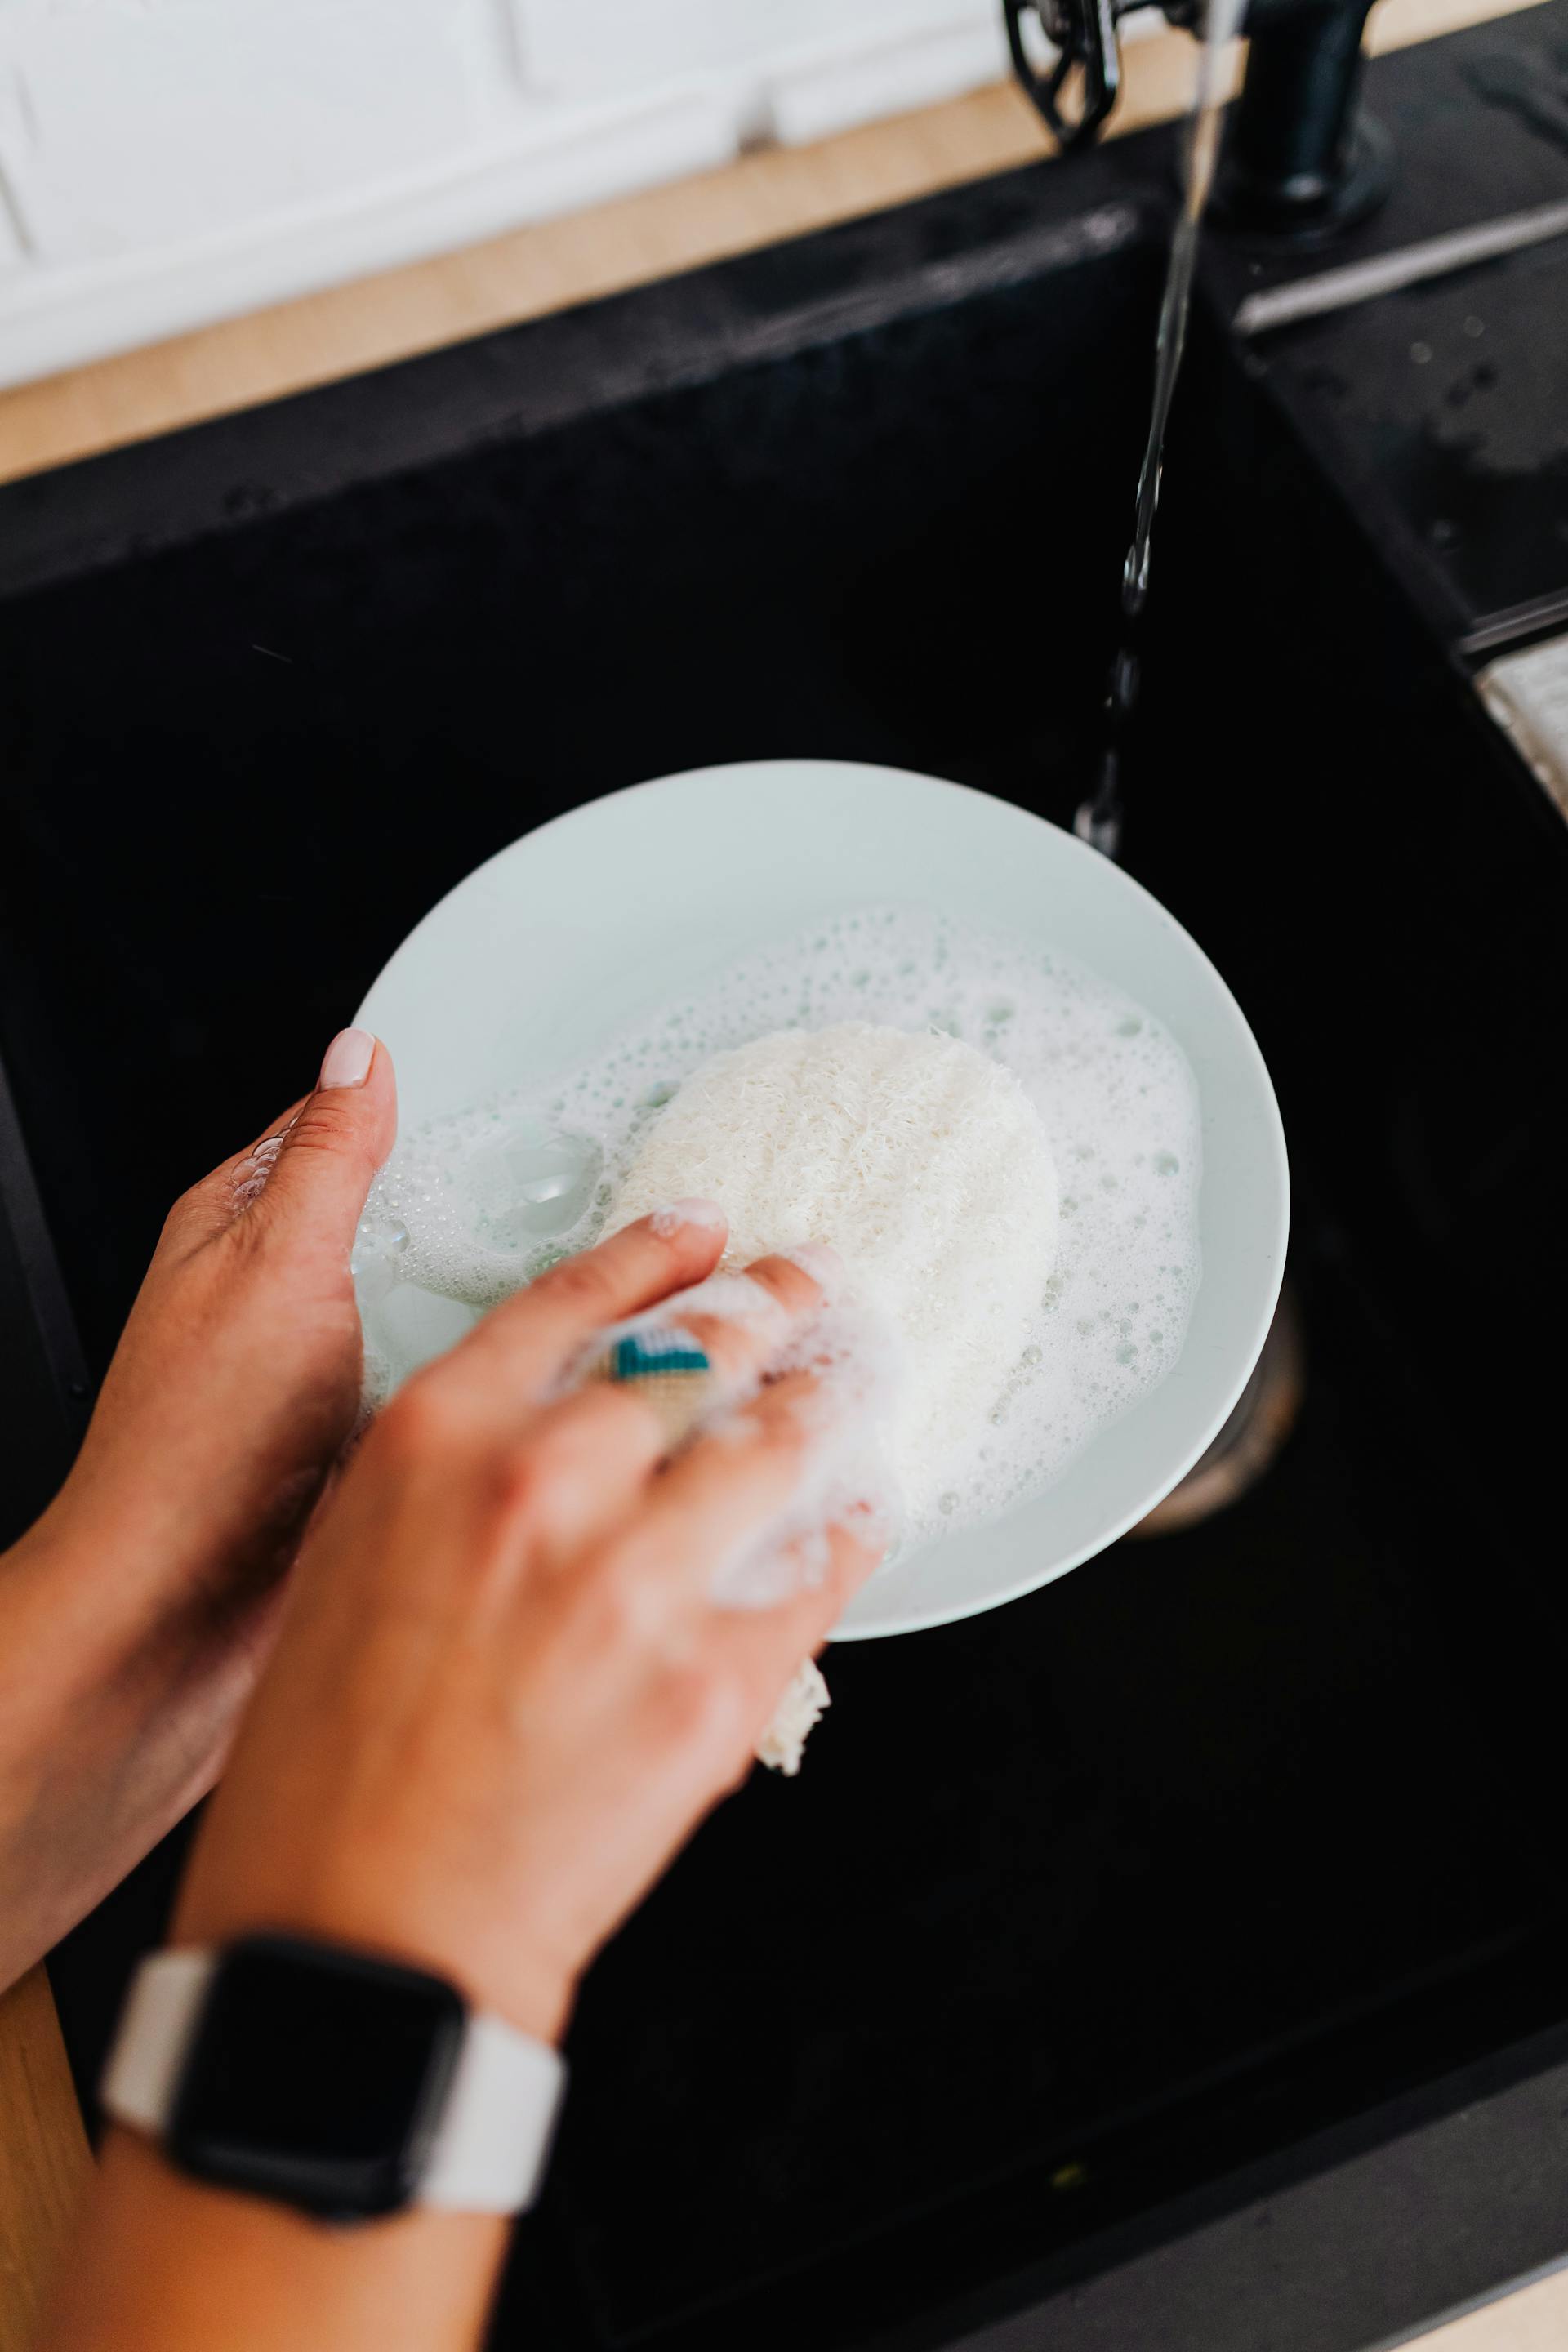 Una persona lavando platos | Fuente: Pexels